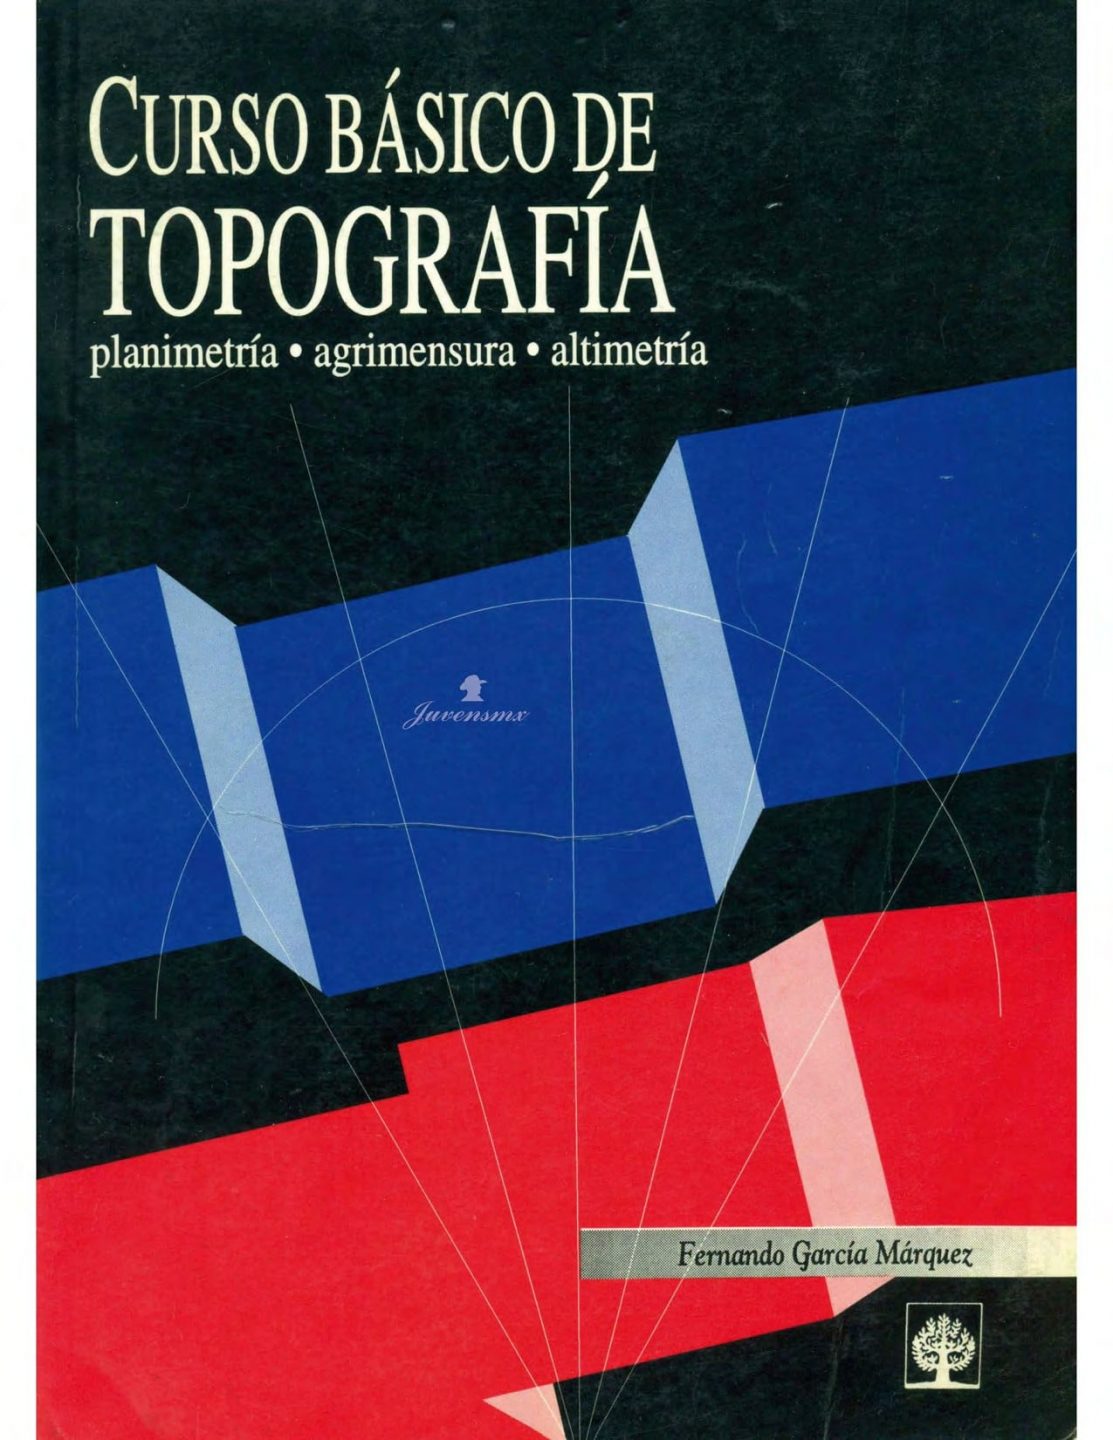 Curso Básico de Topografía 1 Edición Fernando García Márquez PDF